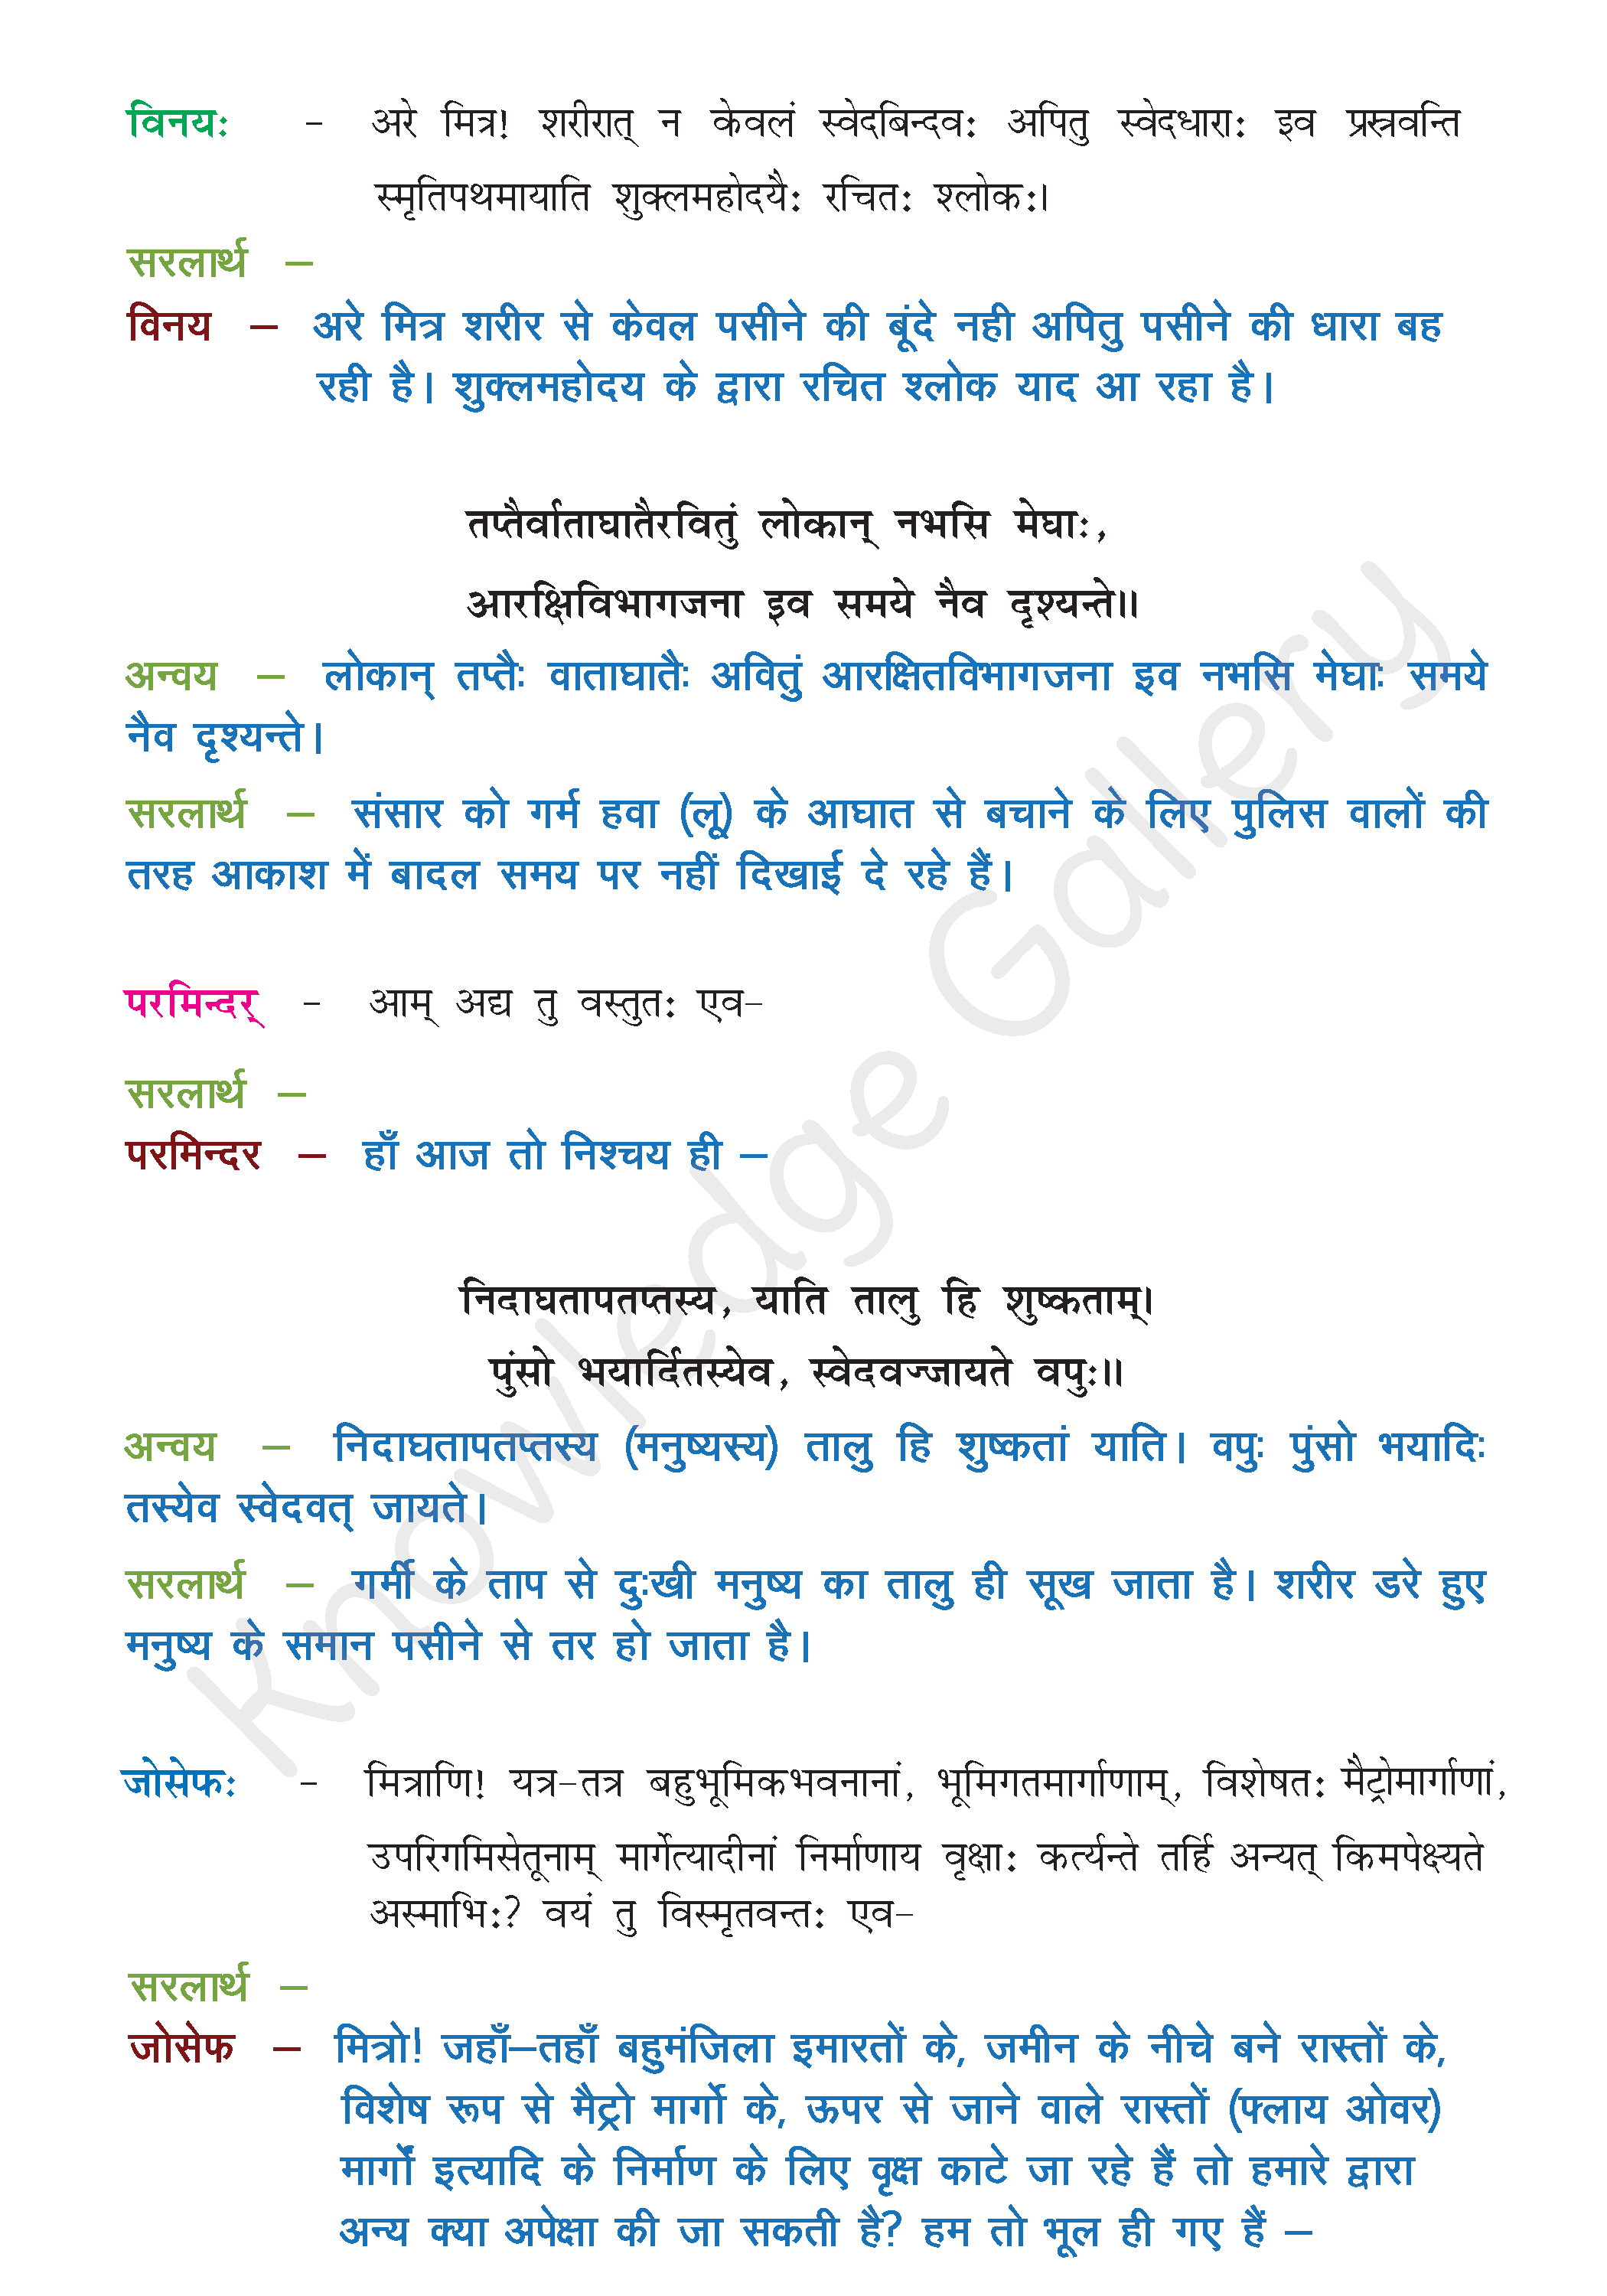 NCERT Solution For Class 8 Sanskrit Chapter 12 part 2